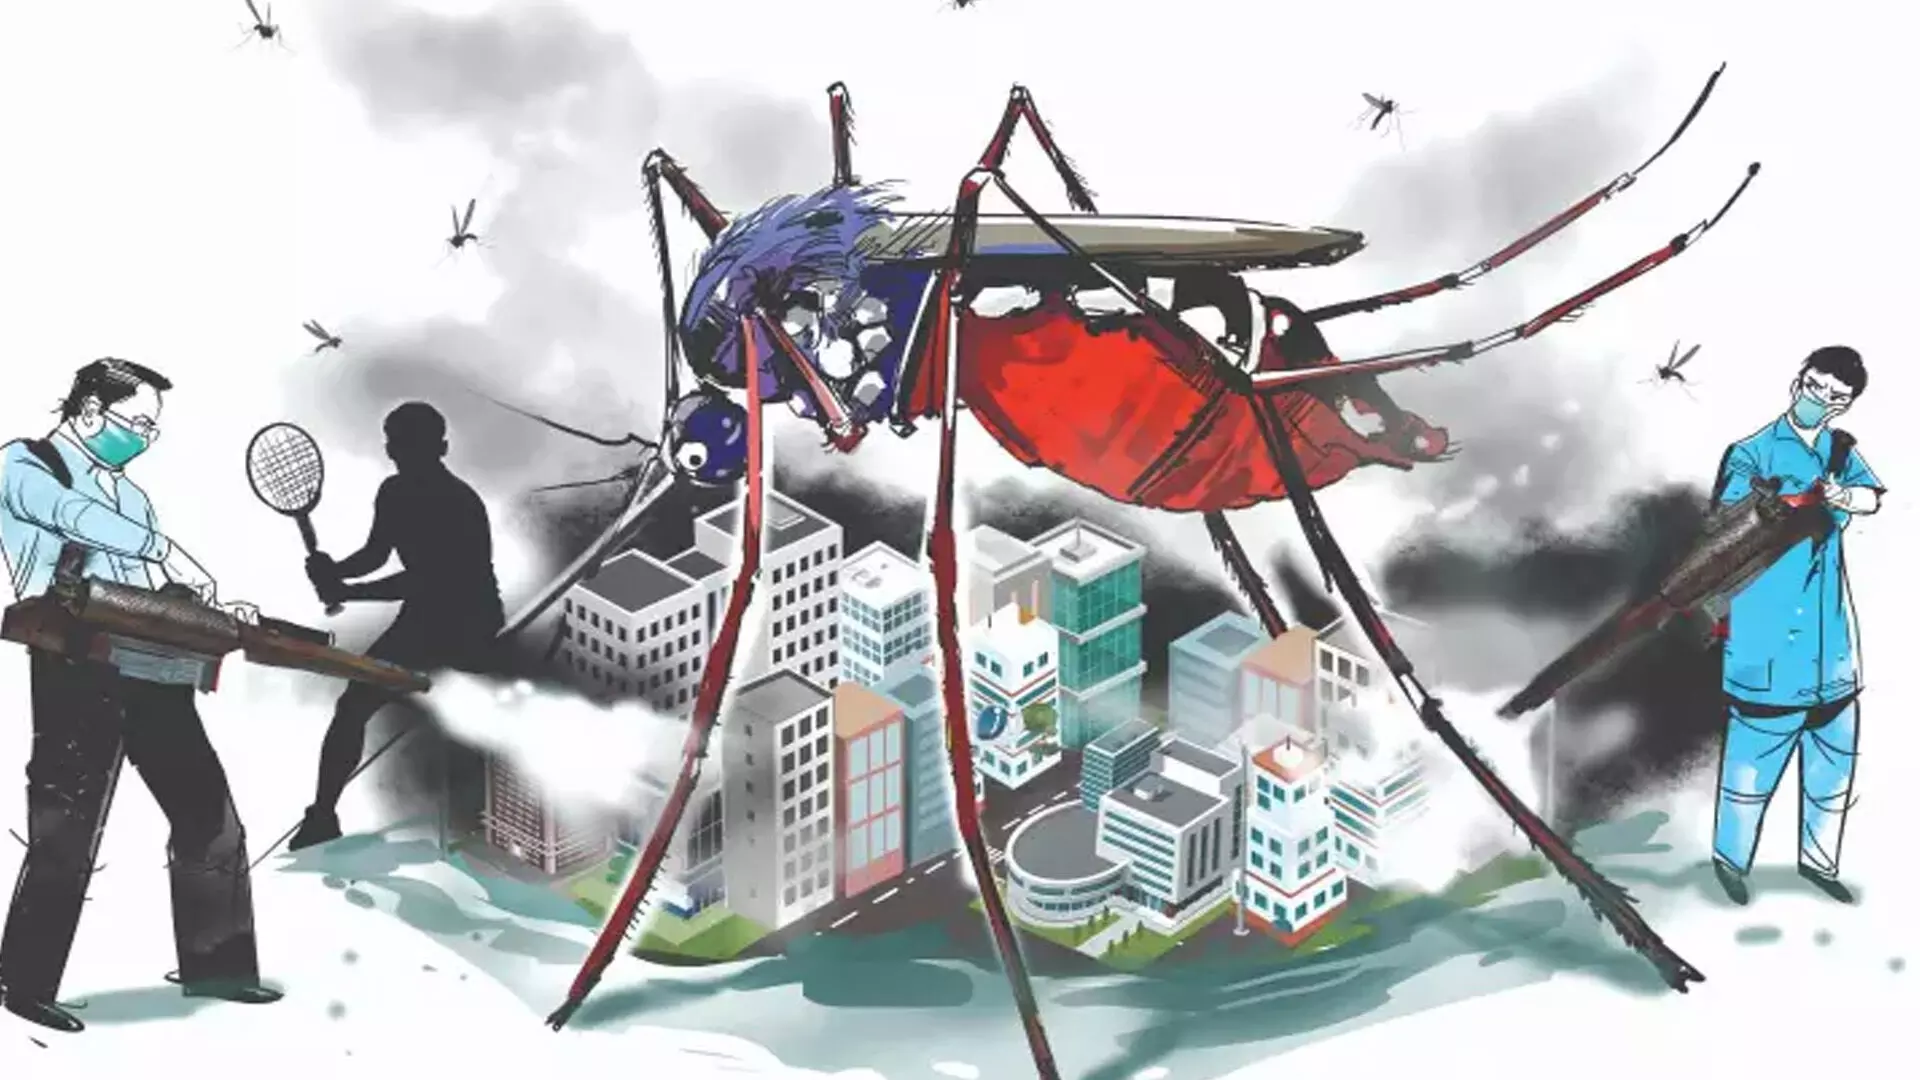 तमिलनाडु में डेंगू के मामले बढ़ने पर जिला स्वास्थ्य अधिकारियों को दिशानिर्देश जारी किए गए